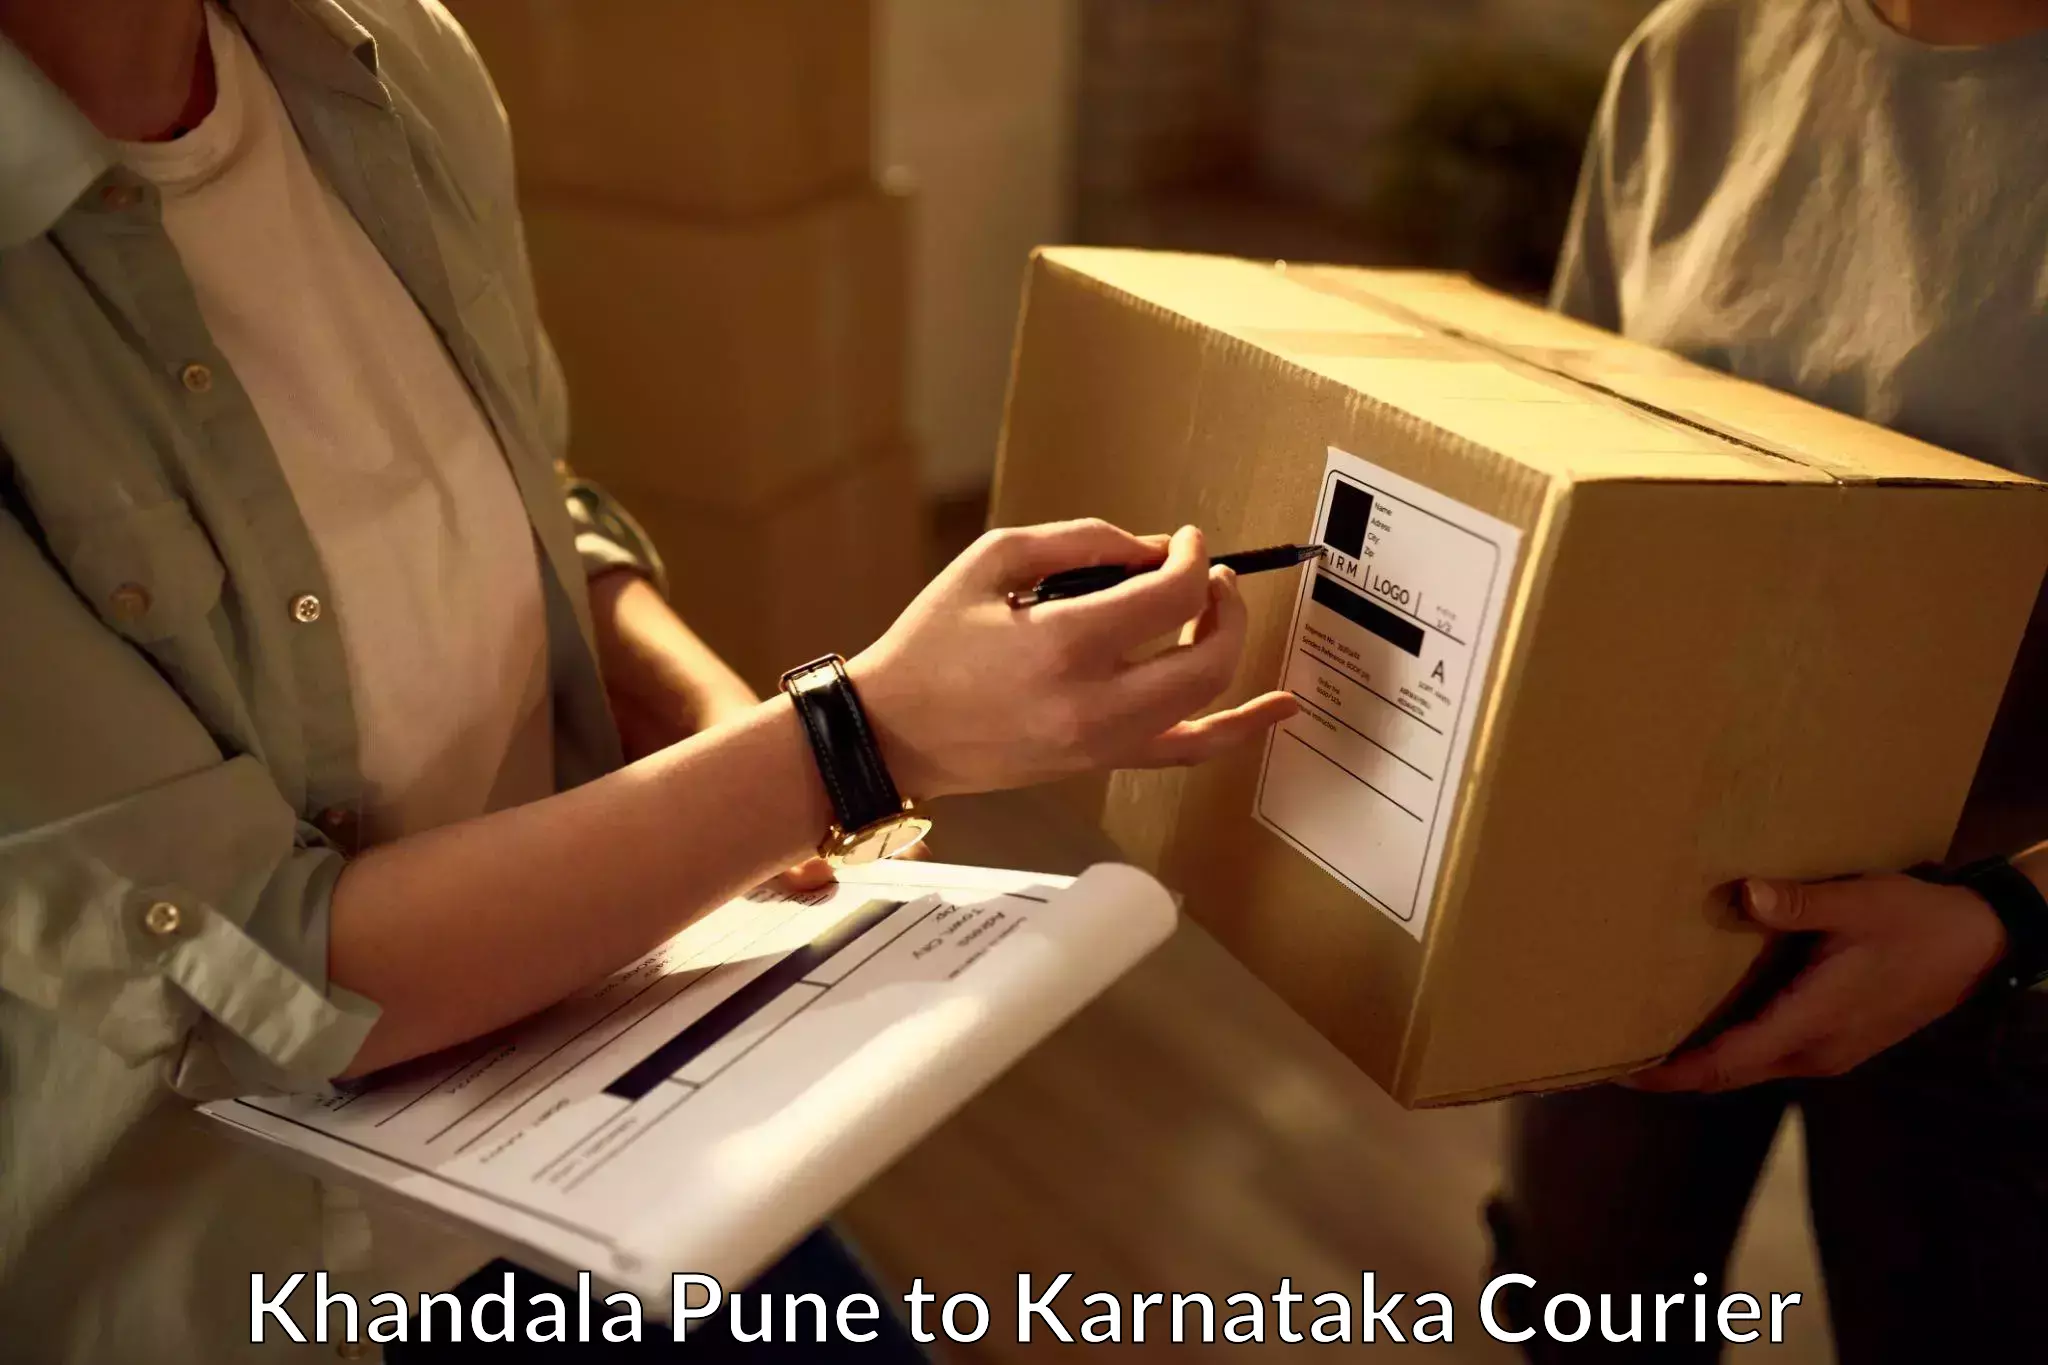 Postal and courier services Khandala Pune to Yenepoya Mangalore